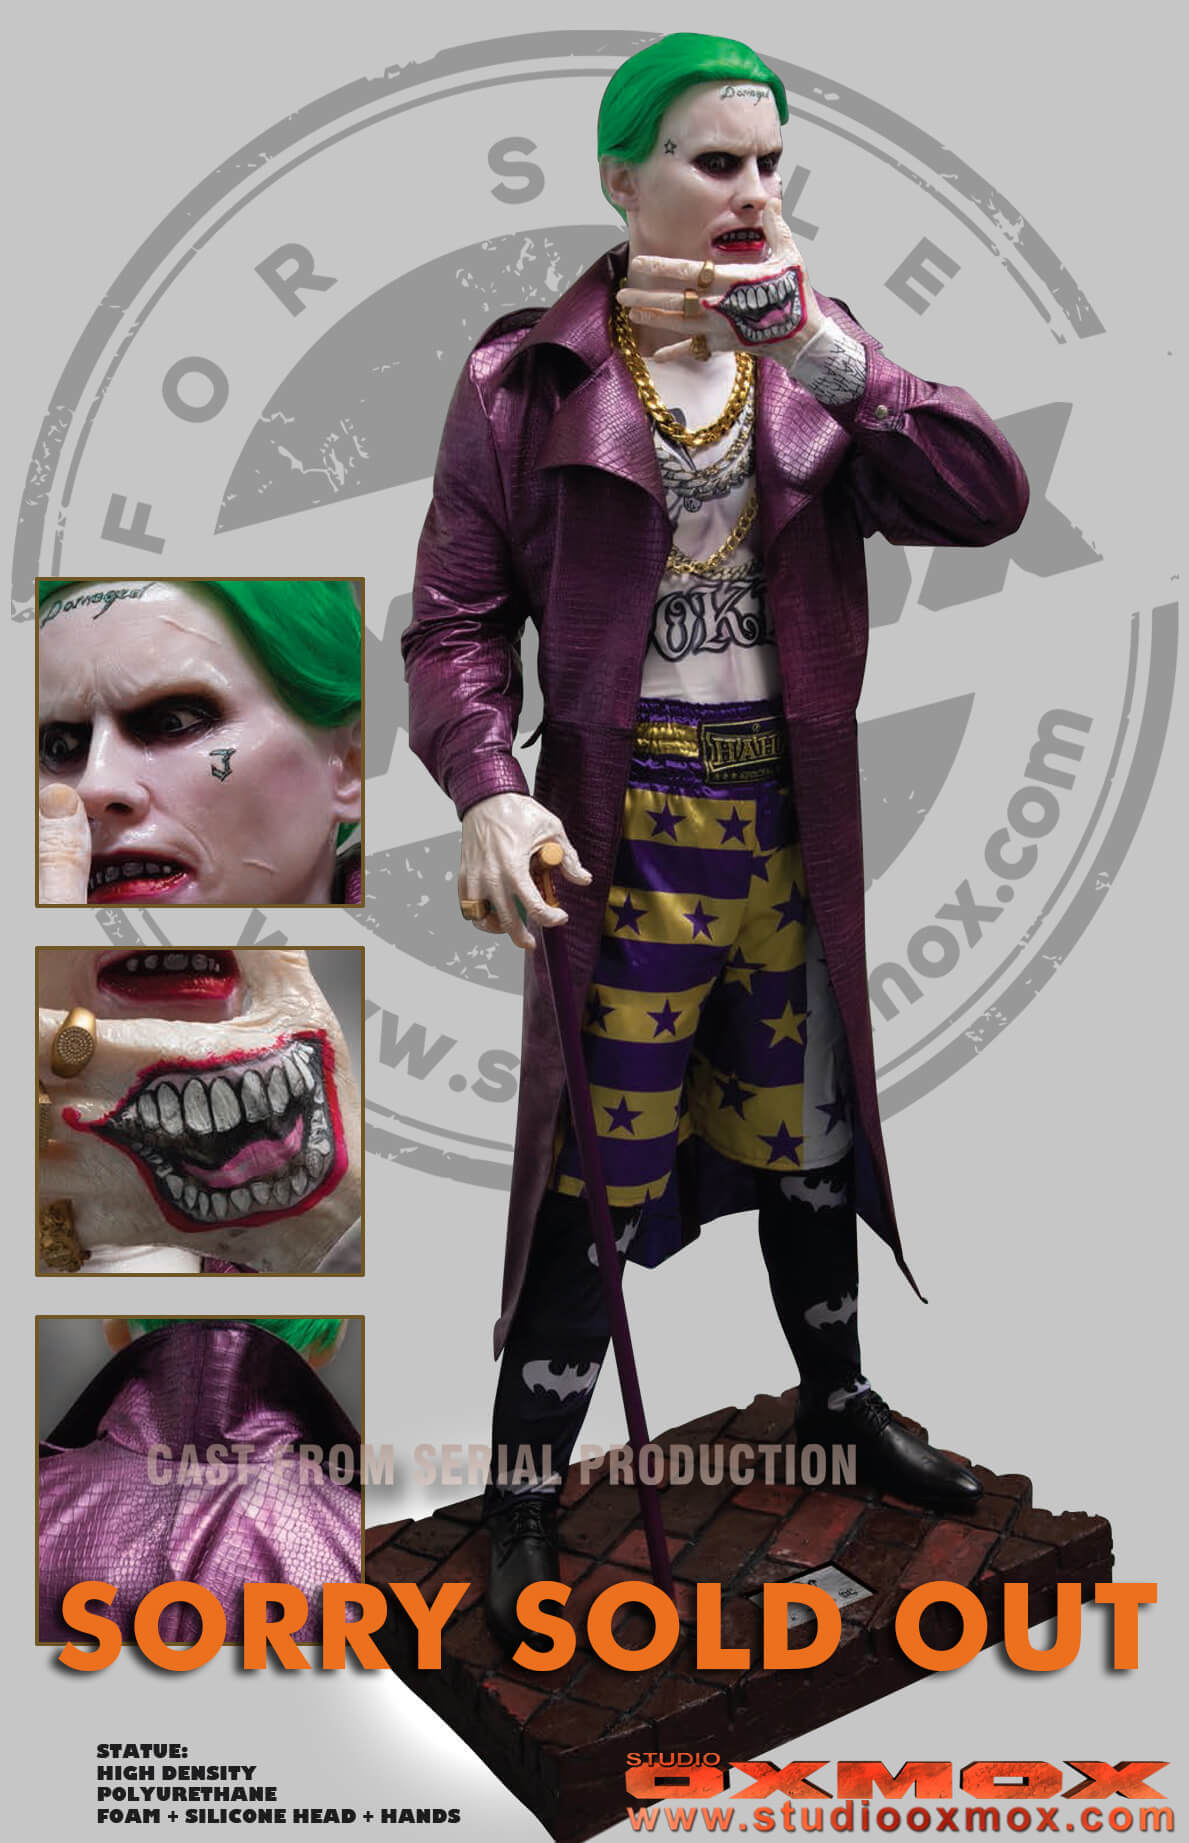 The Joker, Suicide Squad, PU statue